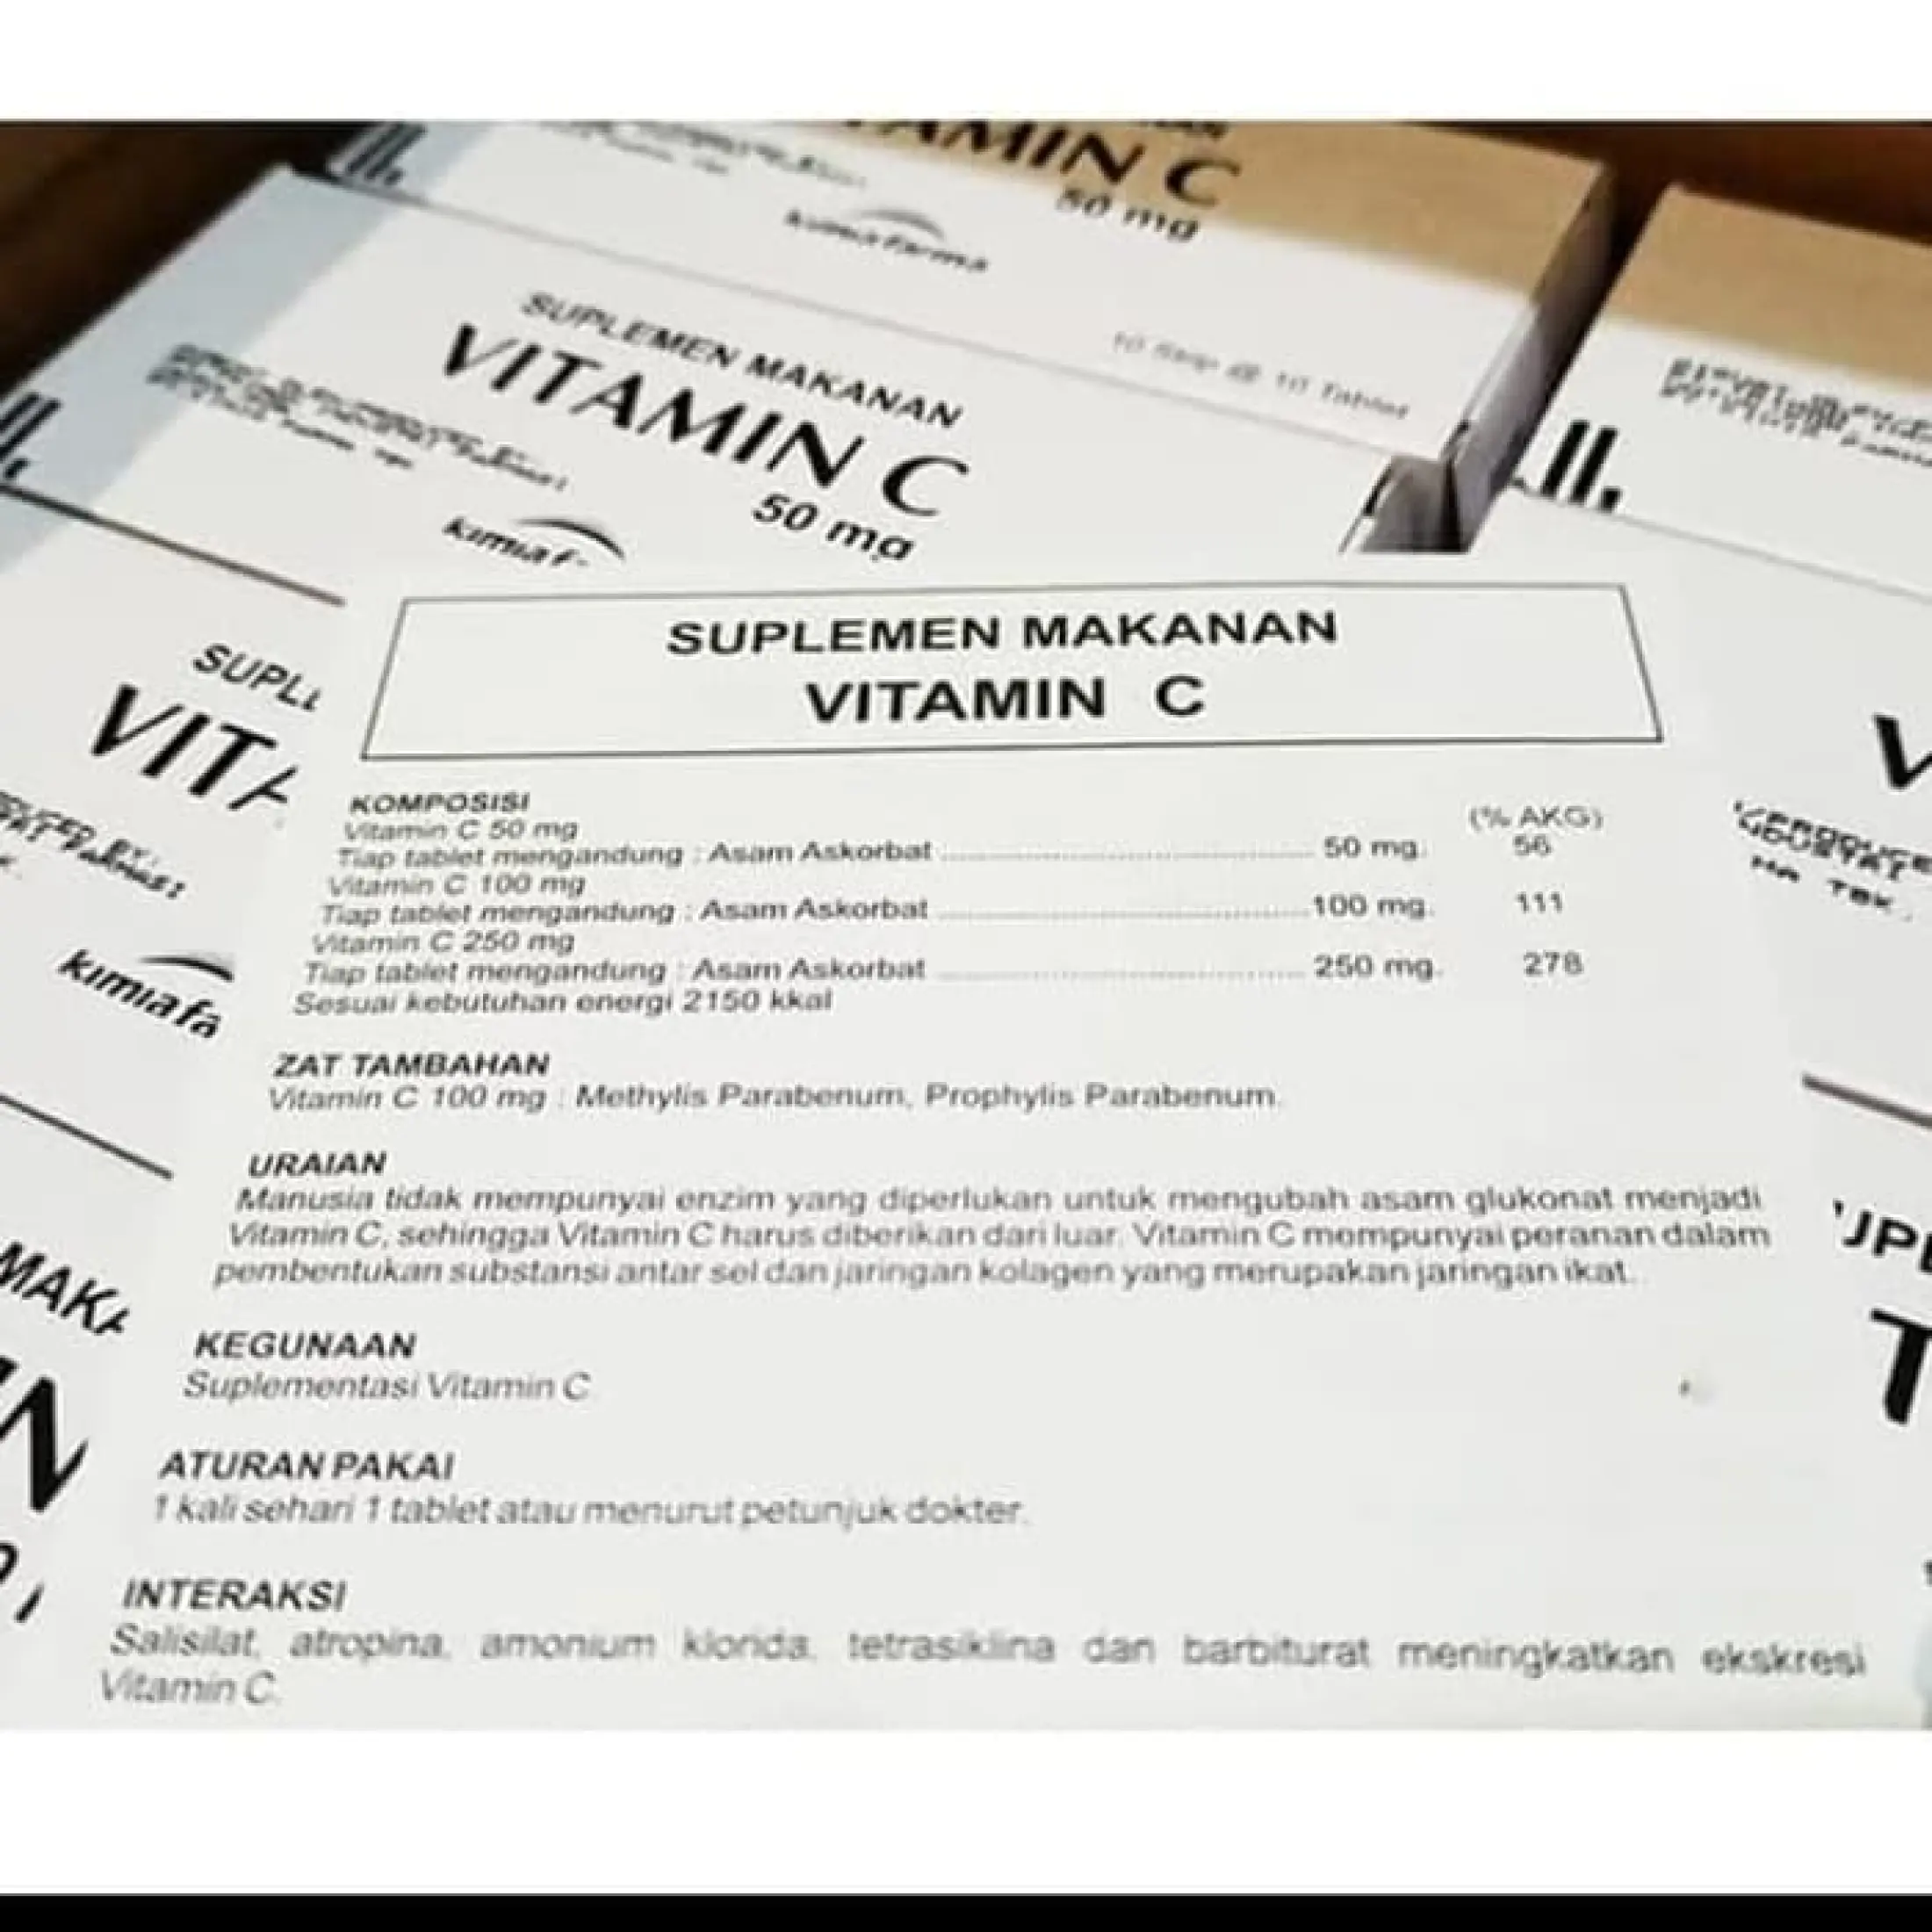 Isi 5 Strip 50 Tablet Vitamin C 50mg Kimia Farma Original Asli Eceran Vitamin C 50mg Vit C 50mg Suplemen Untuk Imun Dan Daya Tahan Tubuh Selama Ramadhan Dan Pendemik Imboost Lazada Indonesia